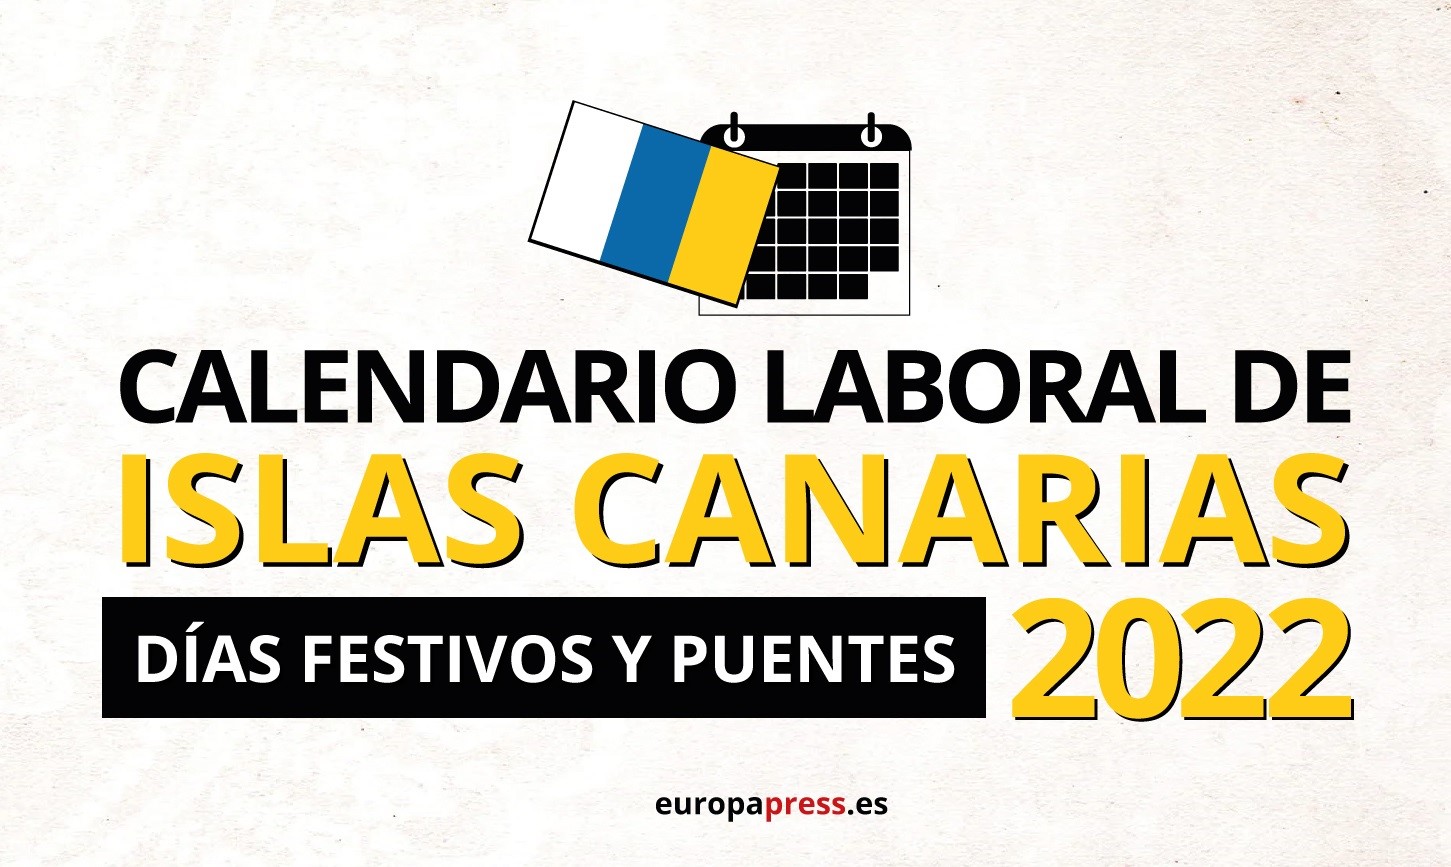 Calendario laboral de las islas Canarias para 2022